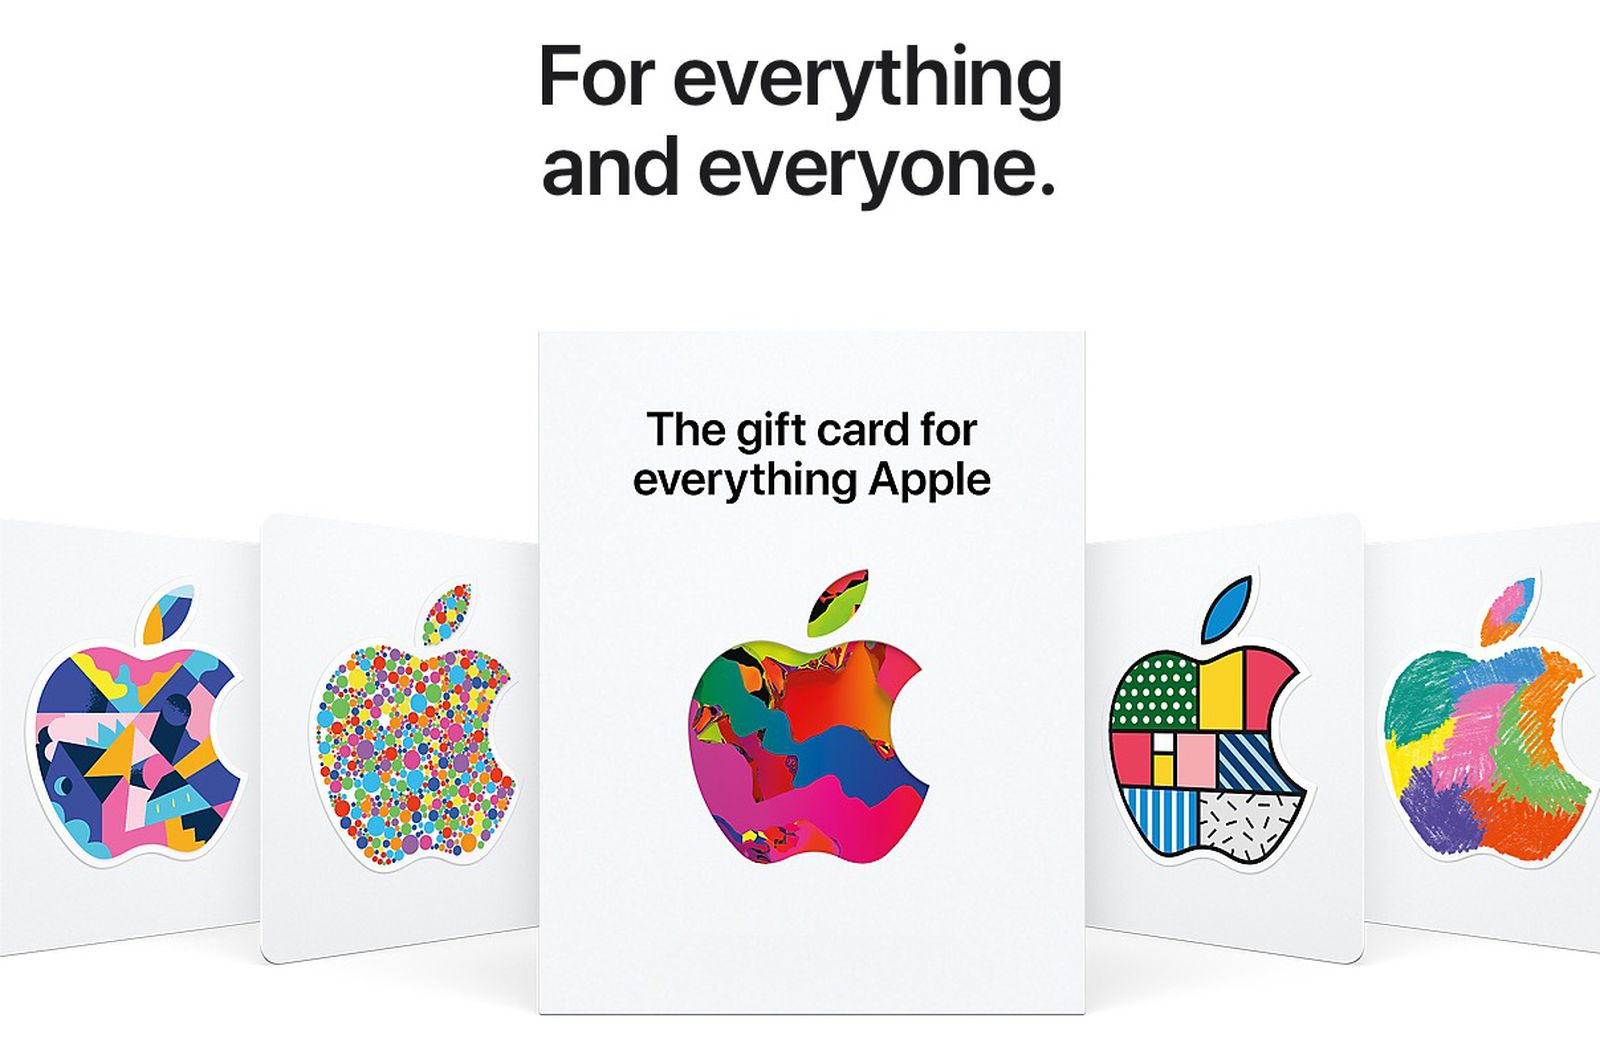 La tarjeta regalo "Everything Apple" ya está disponible en muchos países europeos